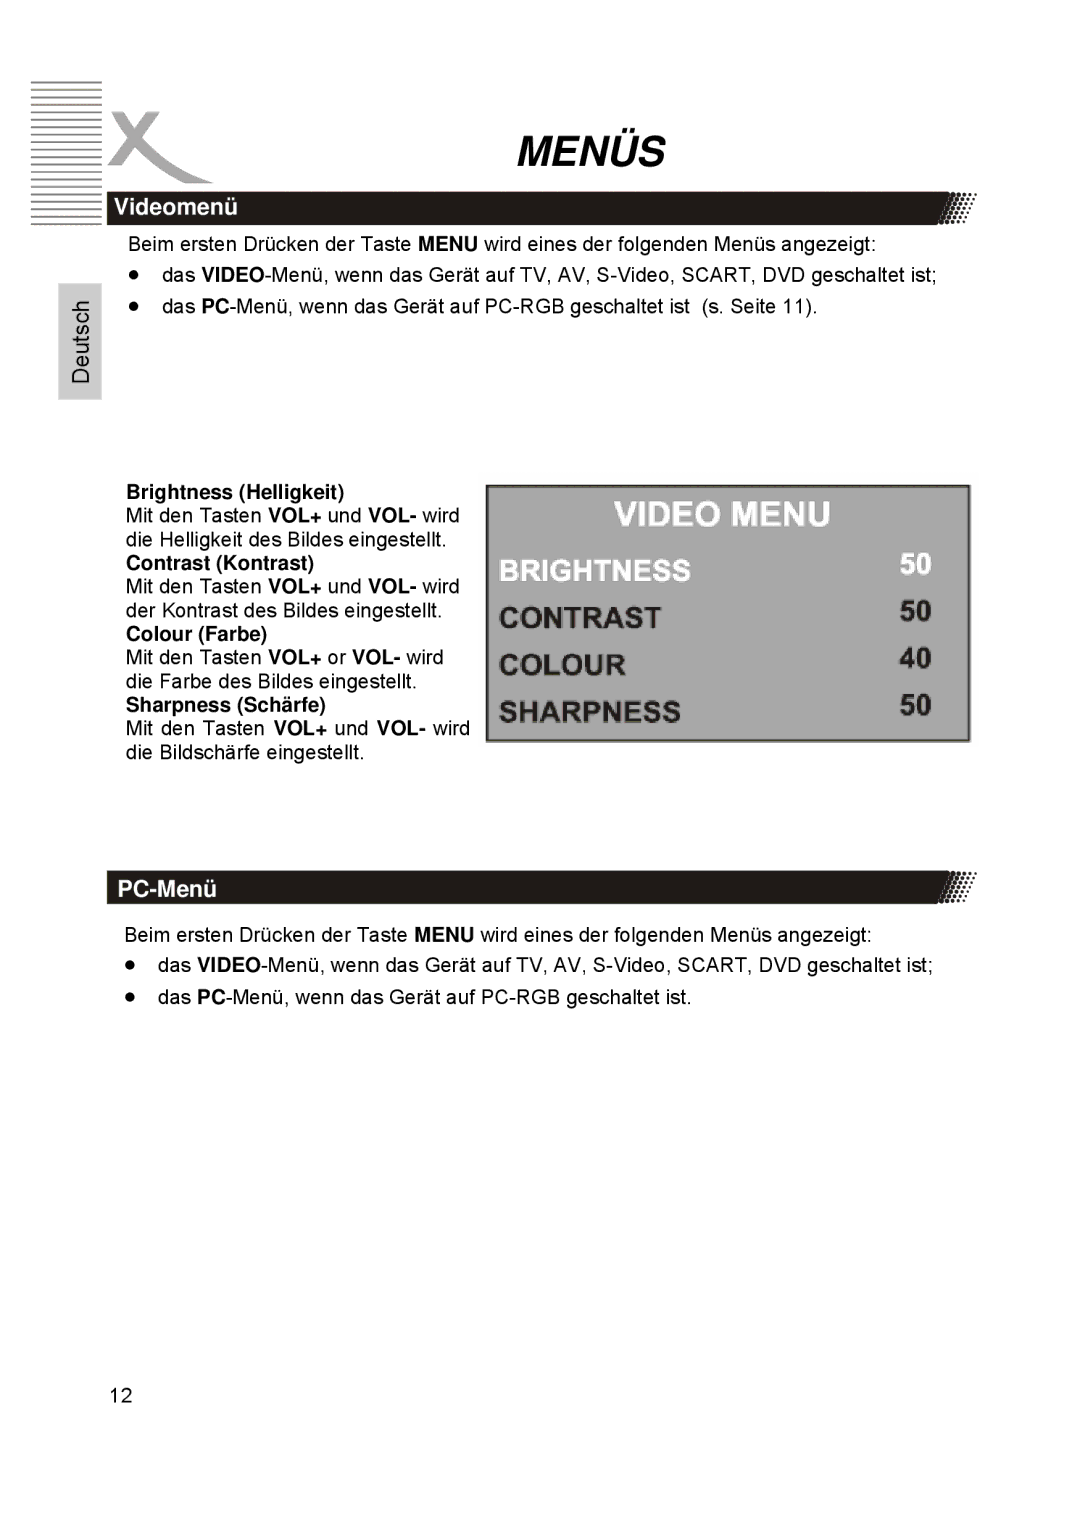 Xoro HTC1900D manual Videomenü, PC-Menü 